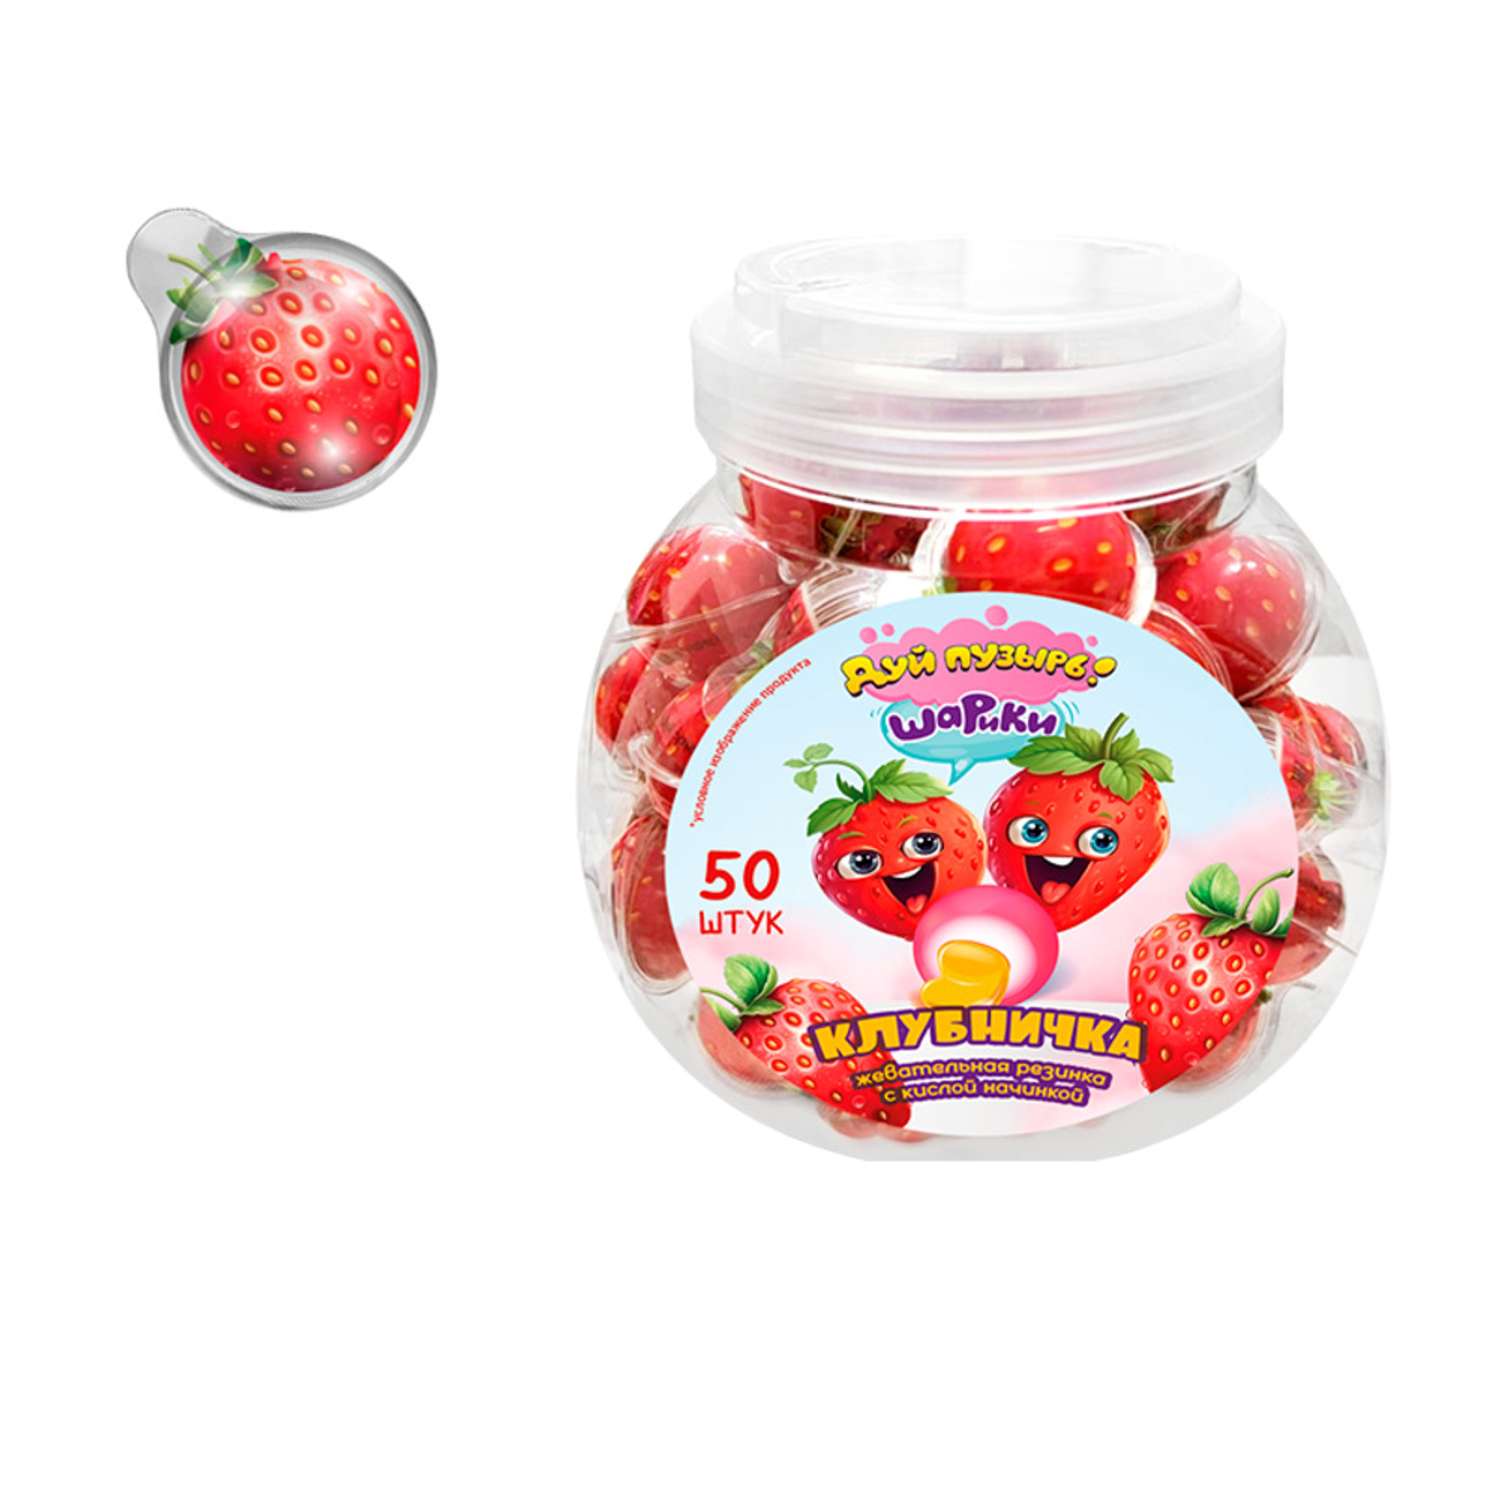 Жевательная резинка Fun Candy Lab Дуй пузырь шарики клубничка 50 шт по 10 гр - фото 1